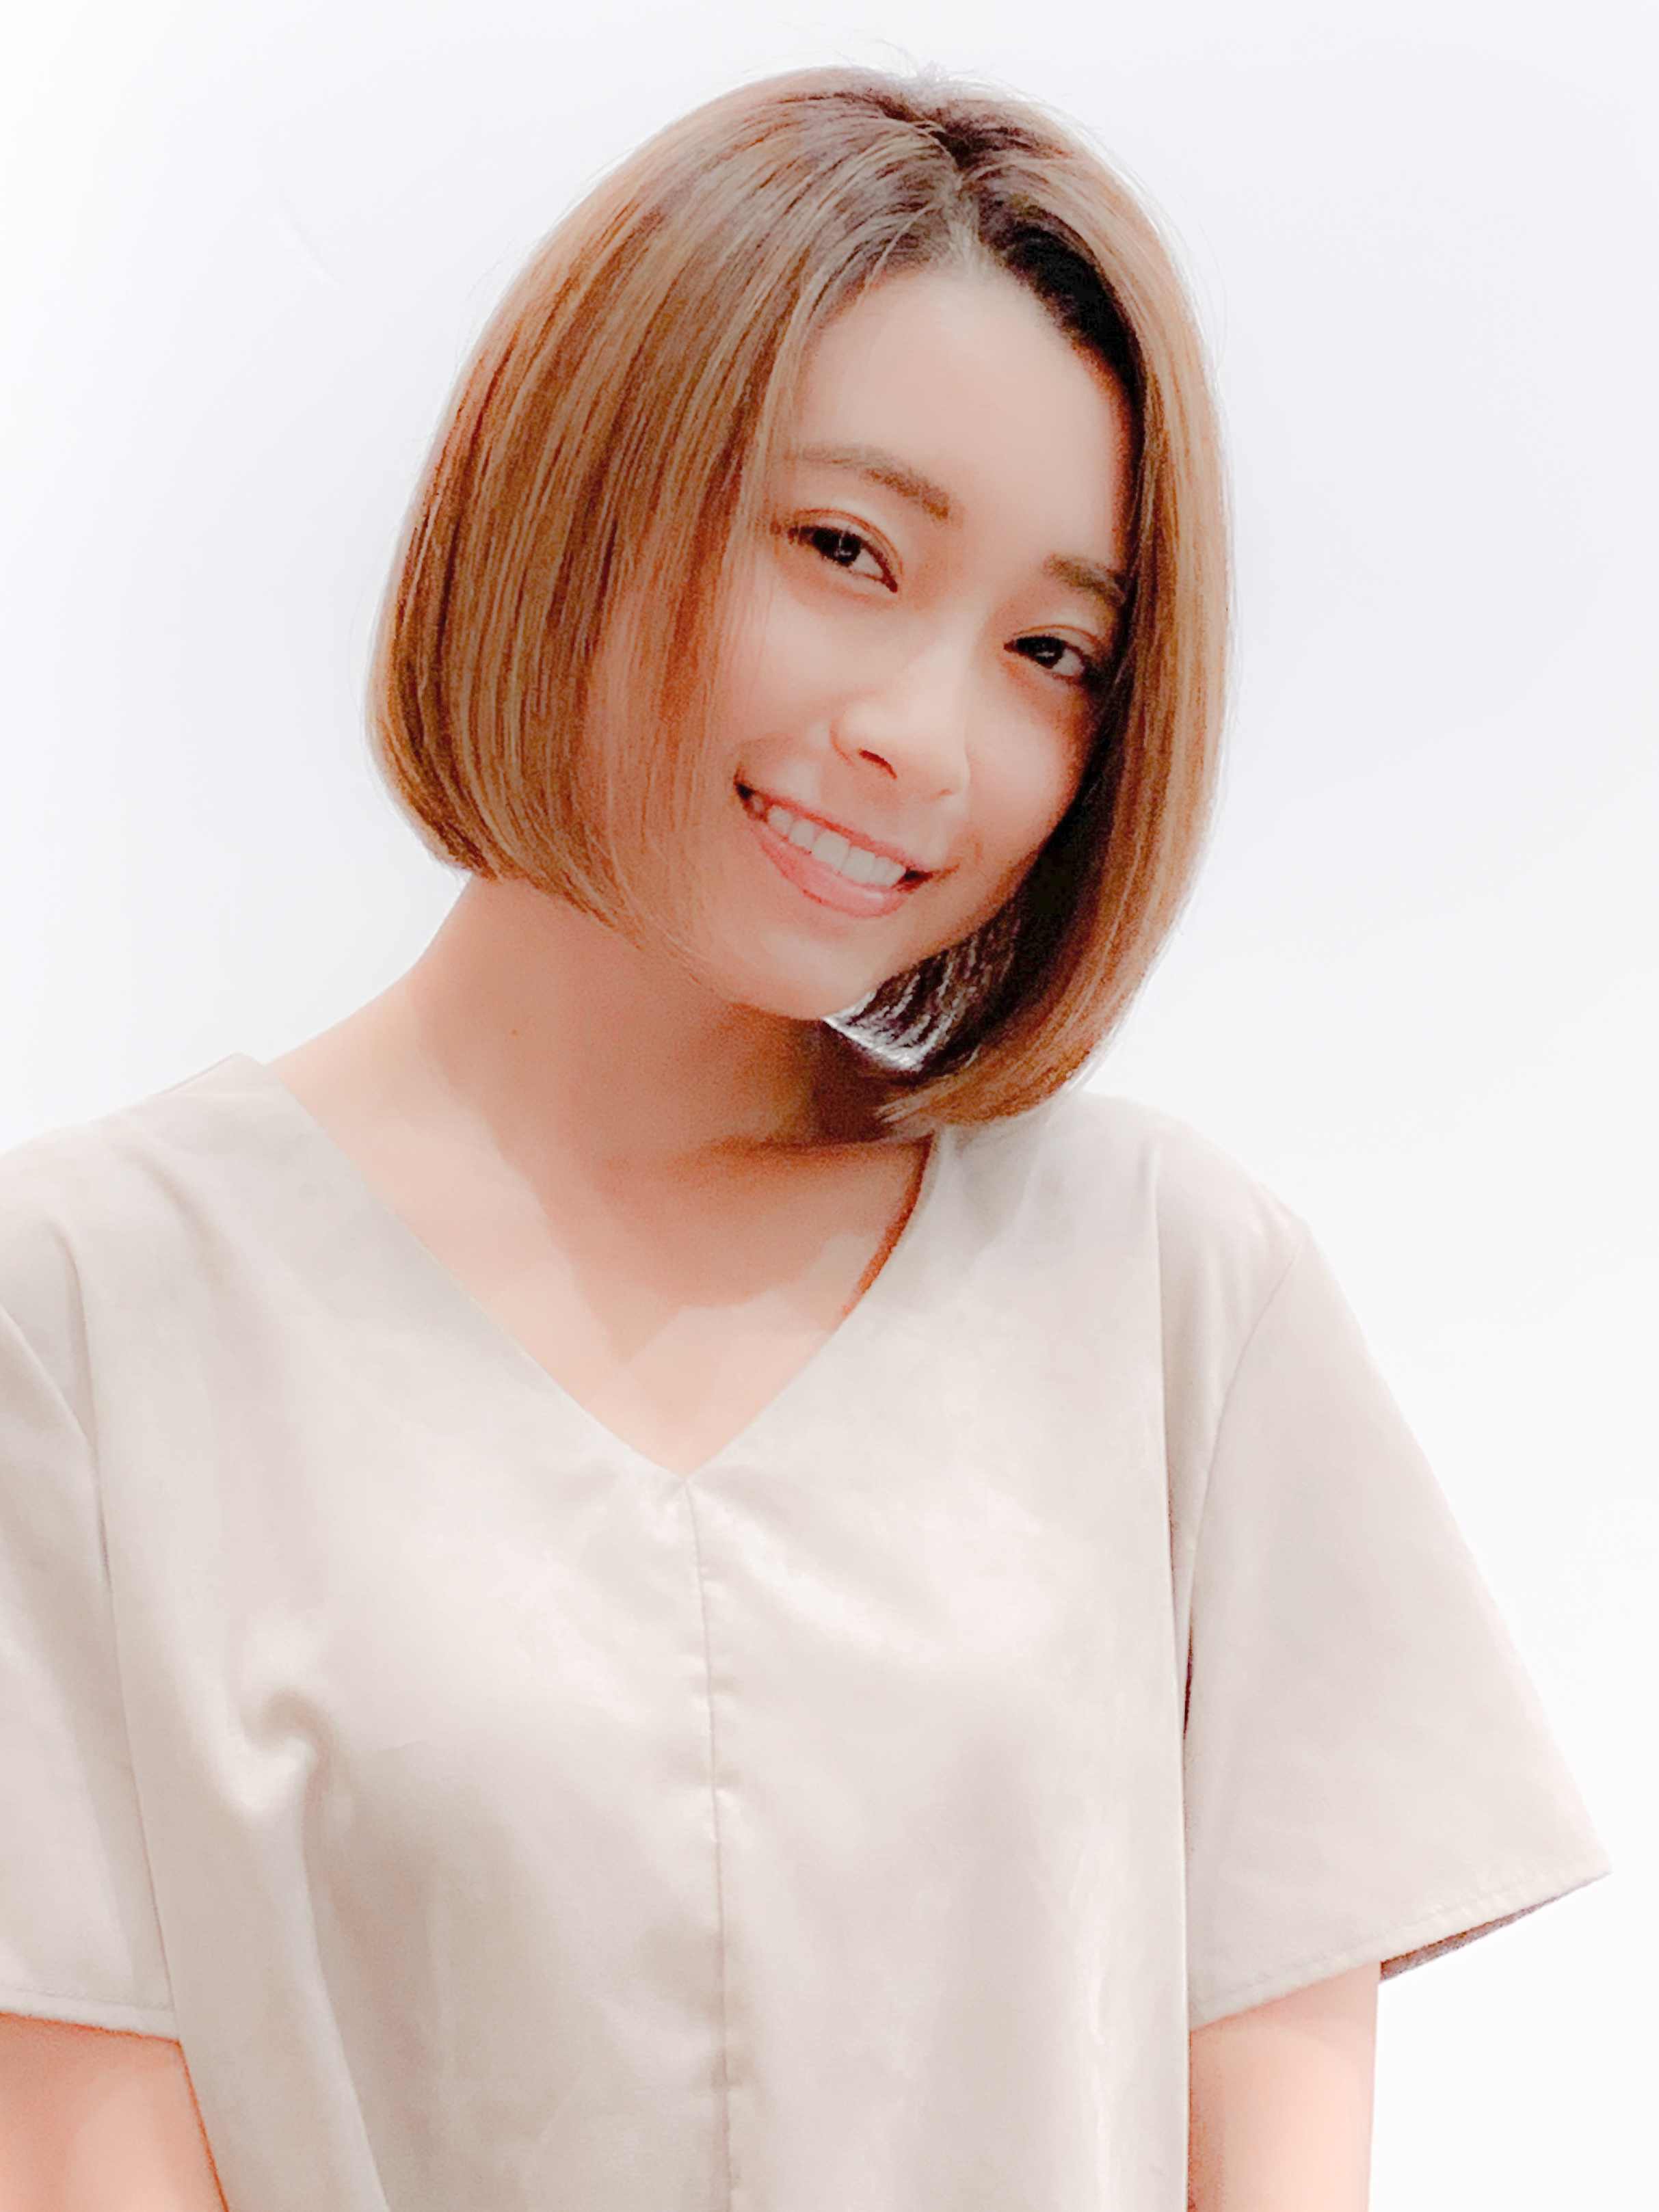 21年夏 大人ボブを 前髪あり 前髪なし の変化で 今の自分に似合う髪型に 似合わせカットが上手い東京の美容師 美容室minx銀座 蛭田のブログ